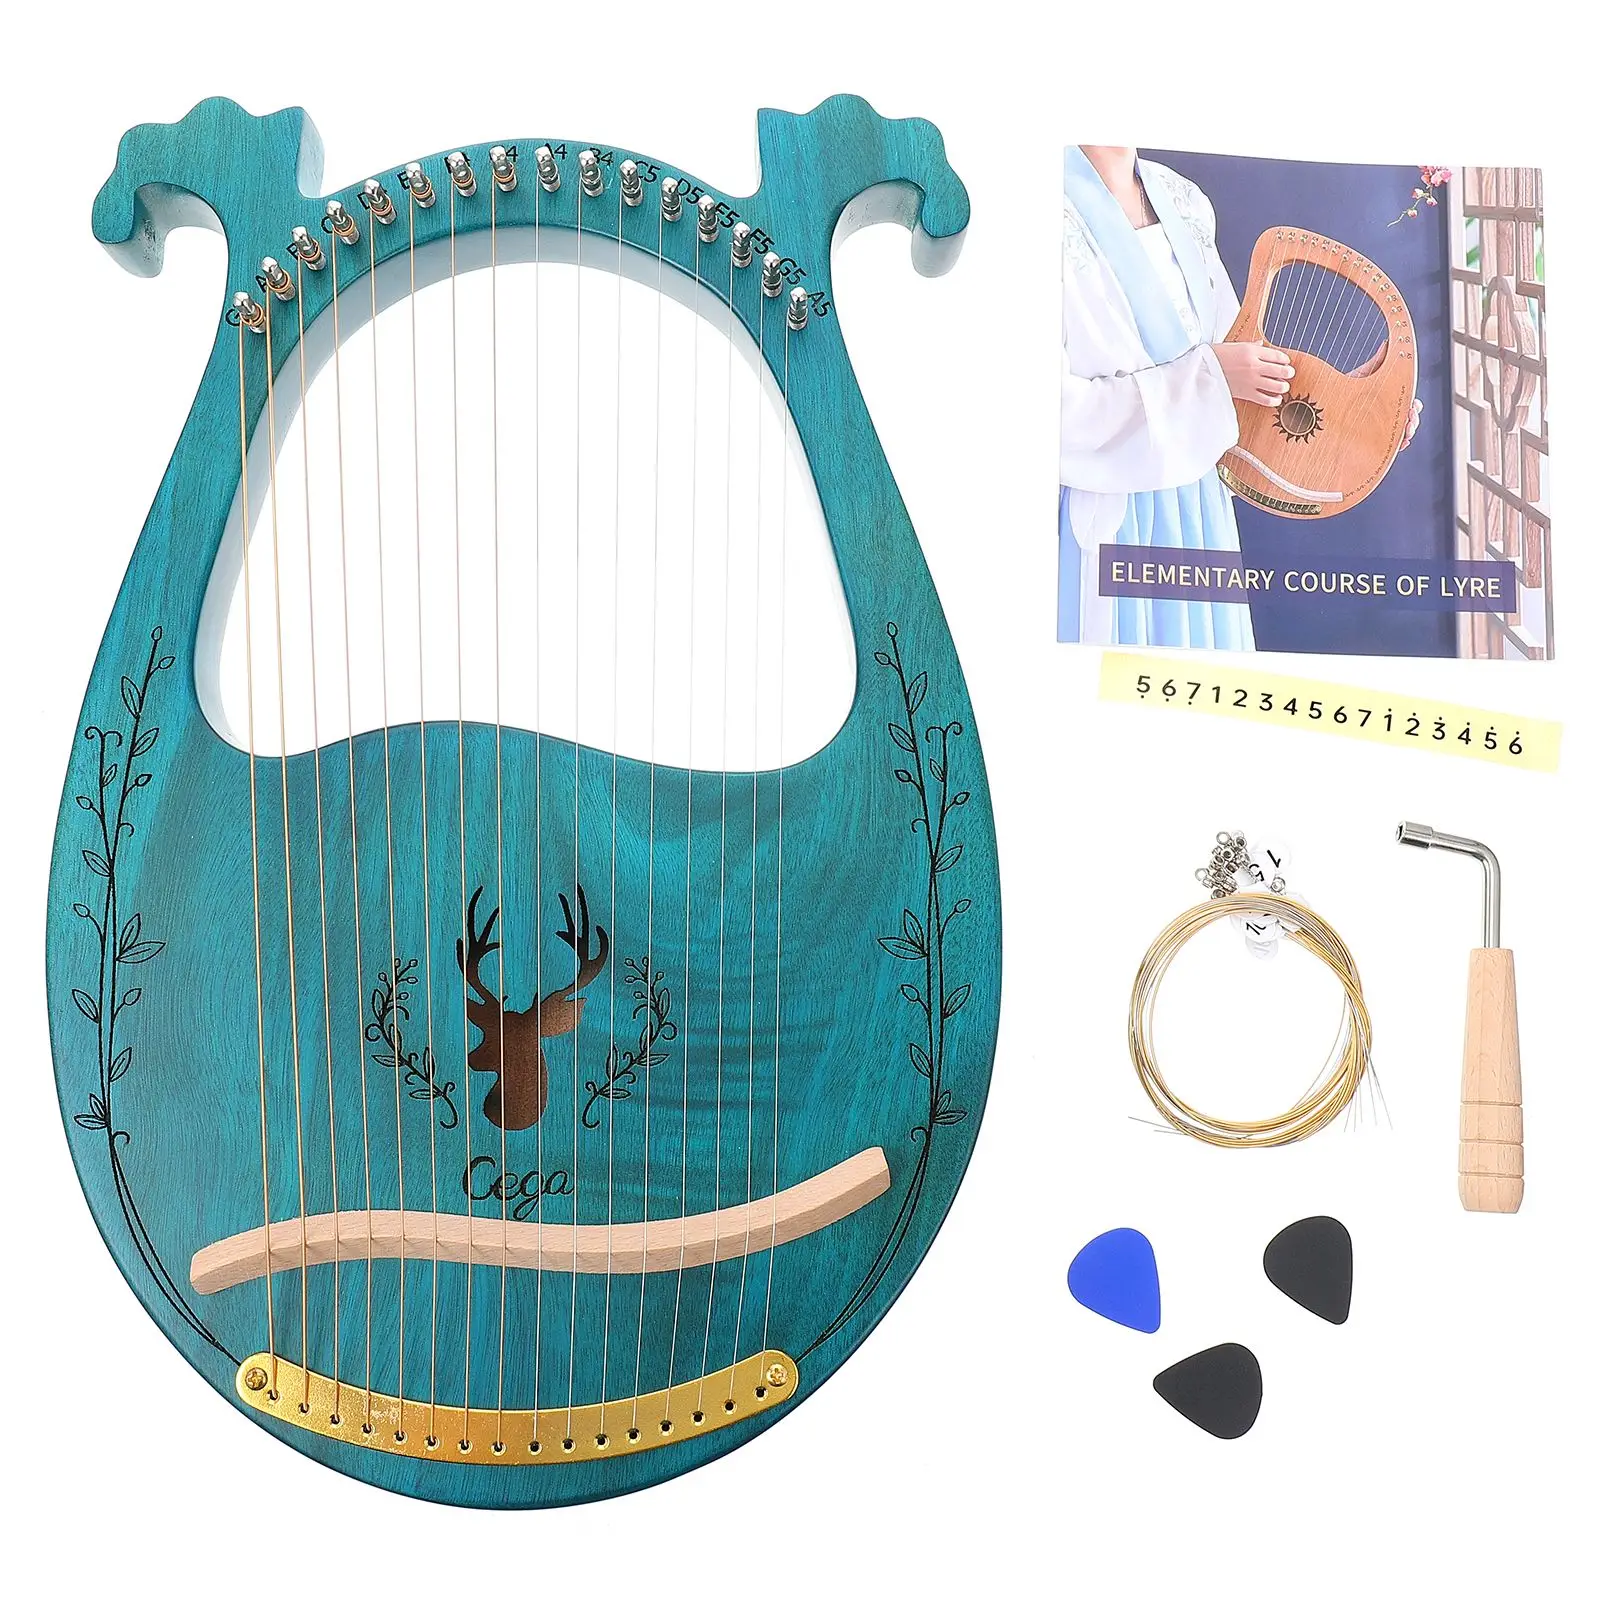 

Lyre Harp 16 струн фортепиано Harp Lyre искусственный музыкальный инструмент Lyre Harp с медиаторами гаечный ключ запасные струны